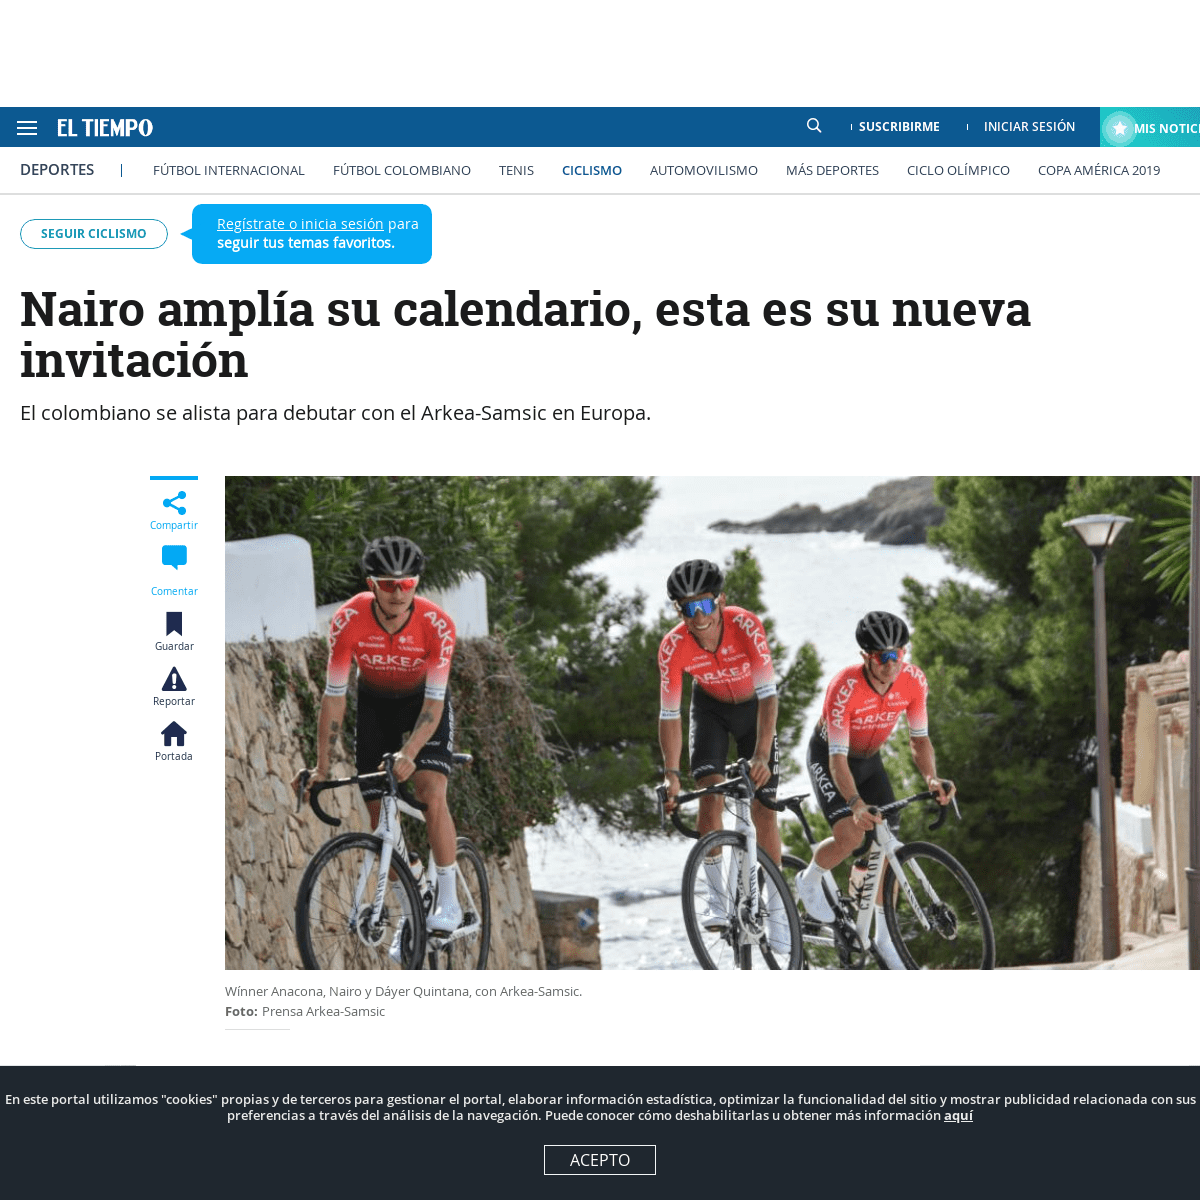 A complete backup of www.eltiempo.com/deportes/ciclismo/nairo-quintana-fue-invitado-a-competir-en-el-giro-de-sicilia-2020-460708